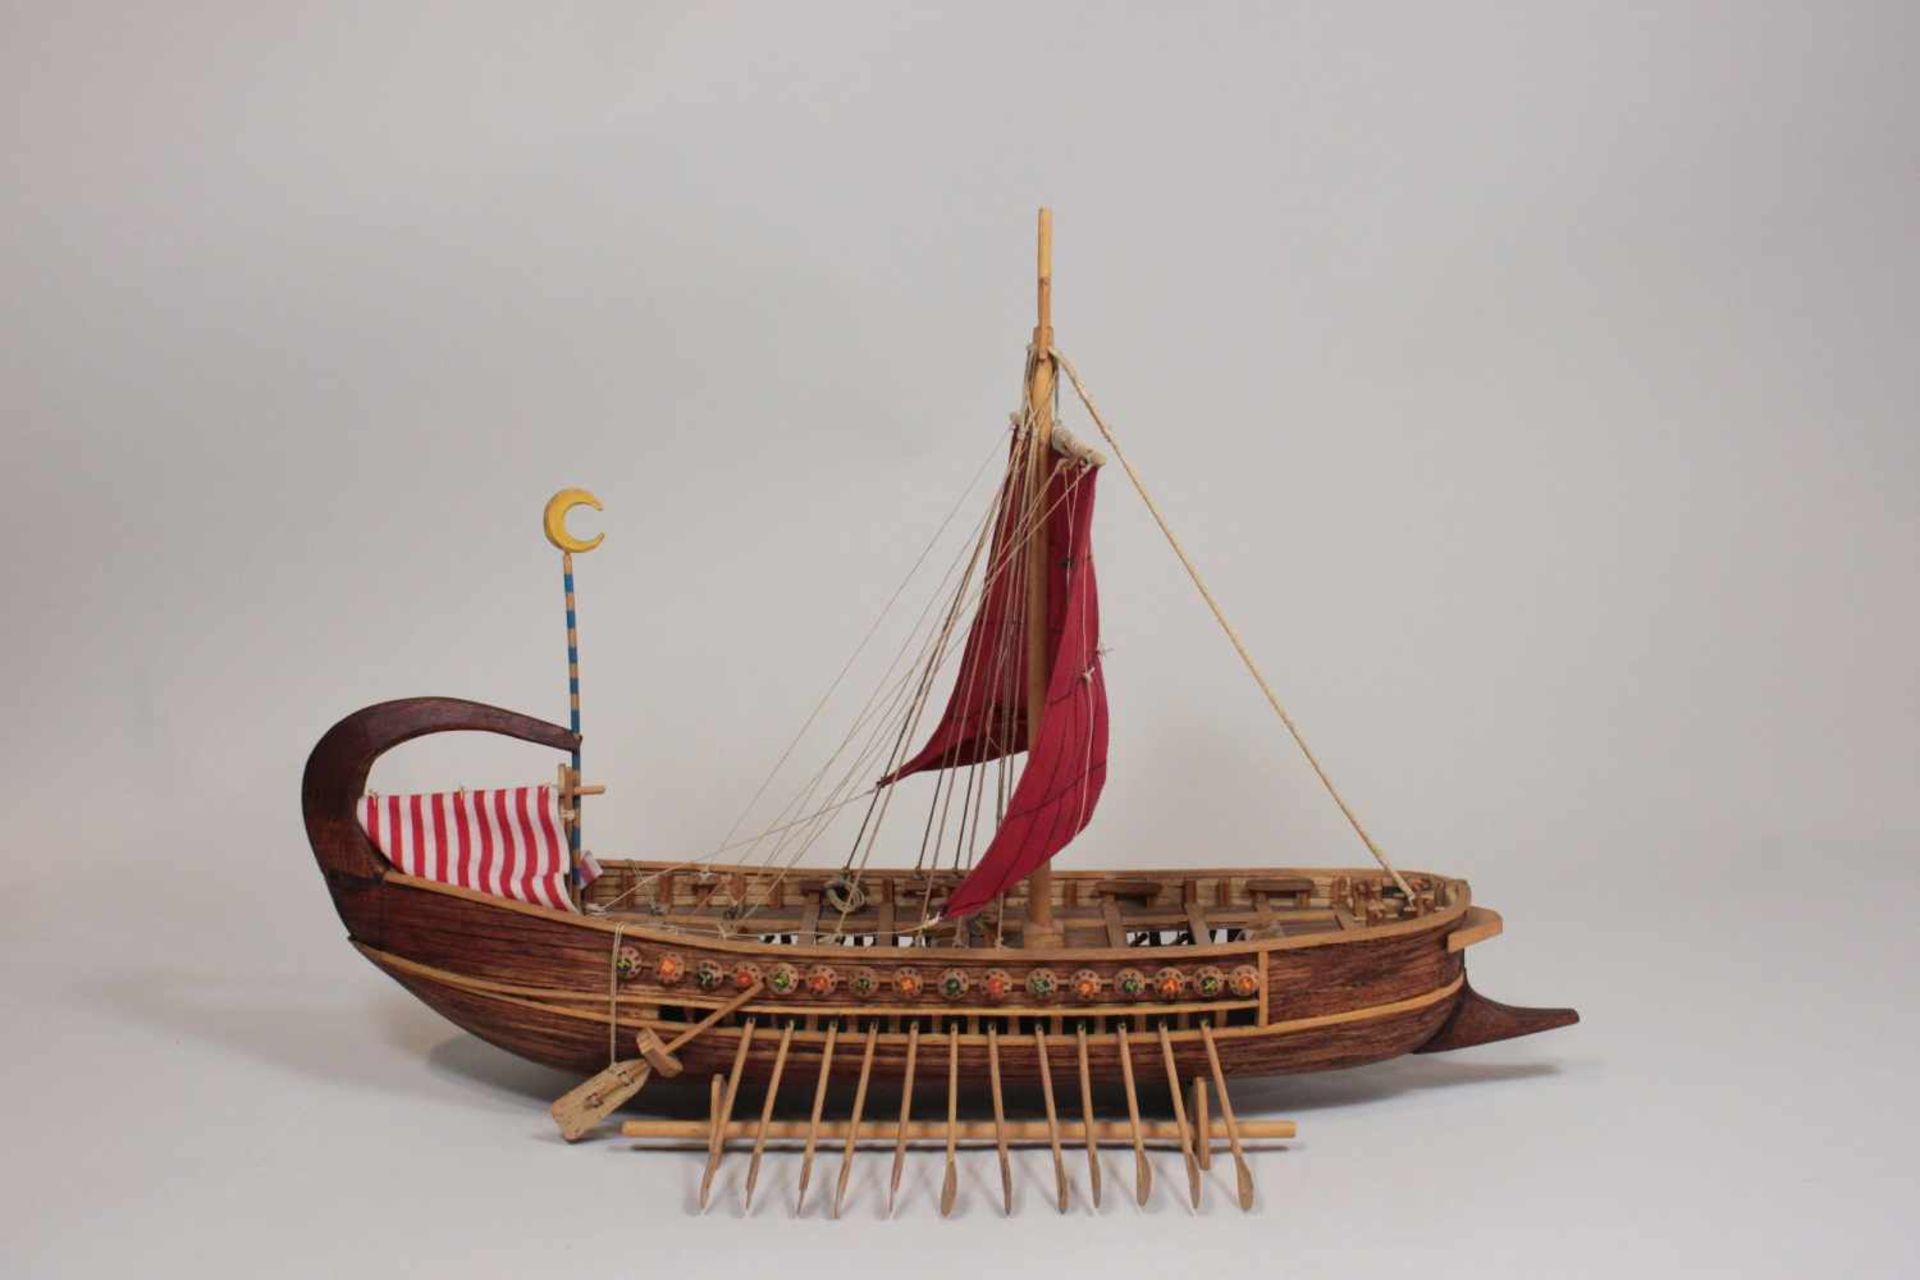 Modellschiff No. 6, Holz, teilweise farbig gefasst, Maßen ca.: 40 x 32 cm. Aus einer